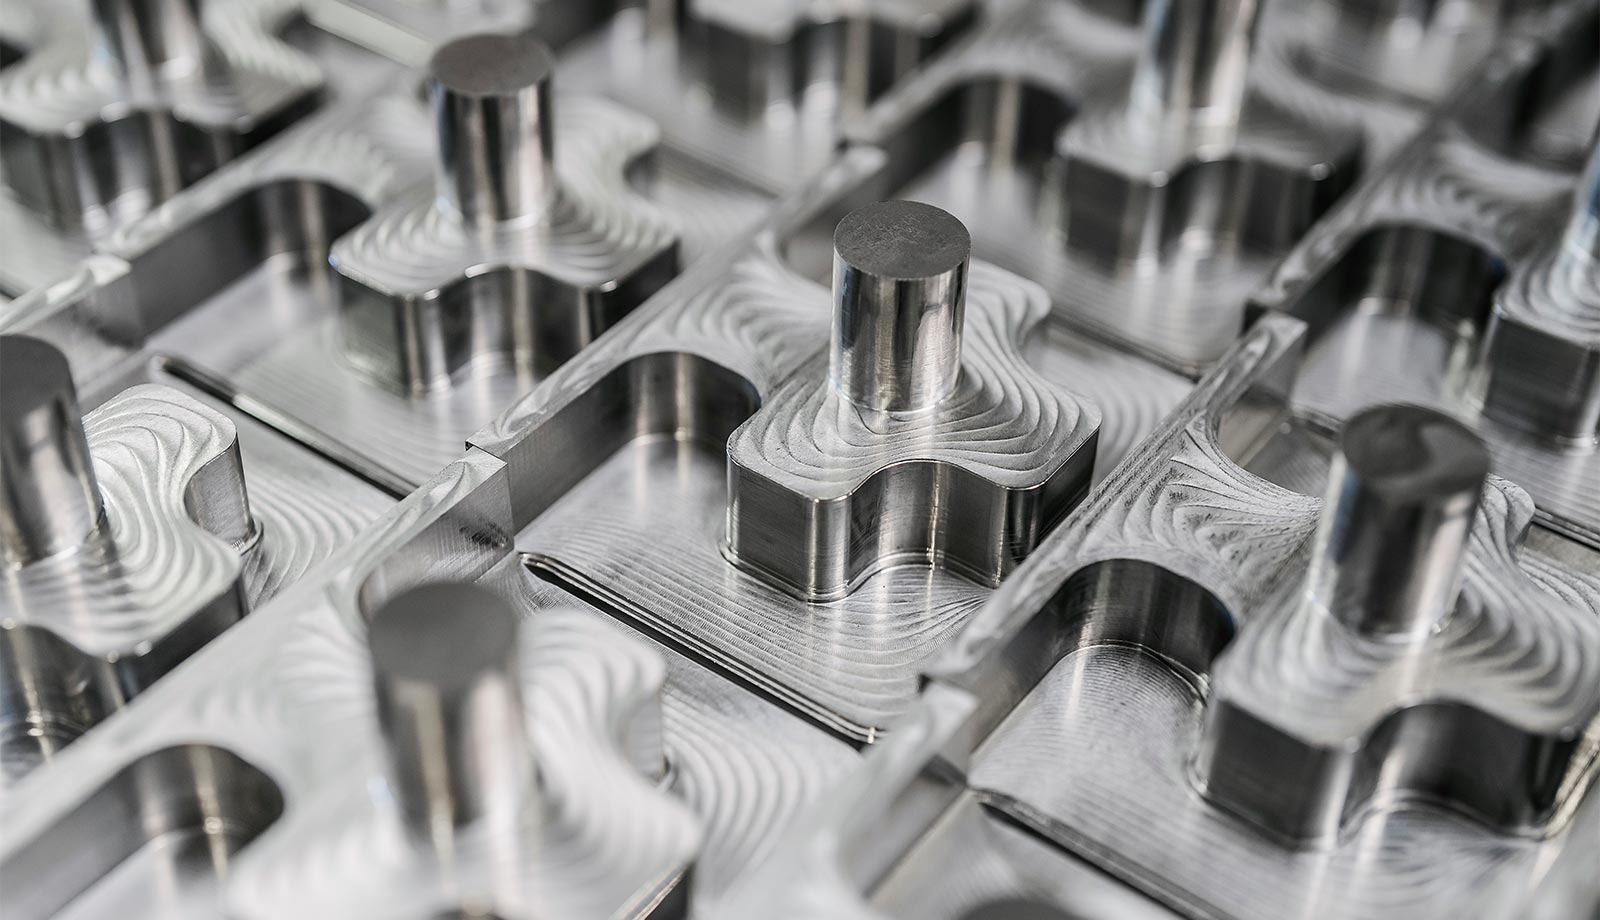 Verschiedene Werkstoffe für kubische CNC-Fertigung bei Biltec: Stahl, Aluminium und Edelstahl. Die Materialien symbolisieren die Vielseitigkeit und Qualität der Bearbeitungsmöglichkeiten.